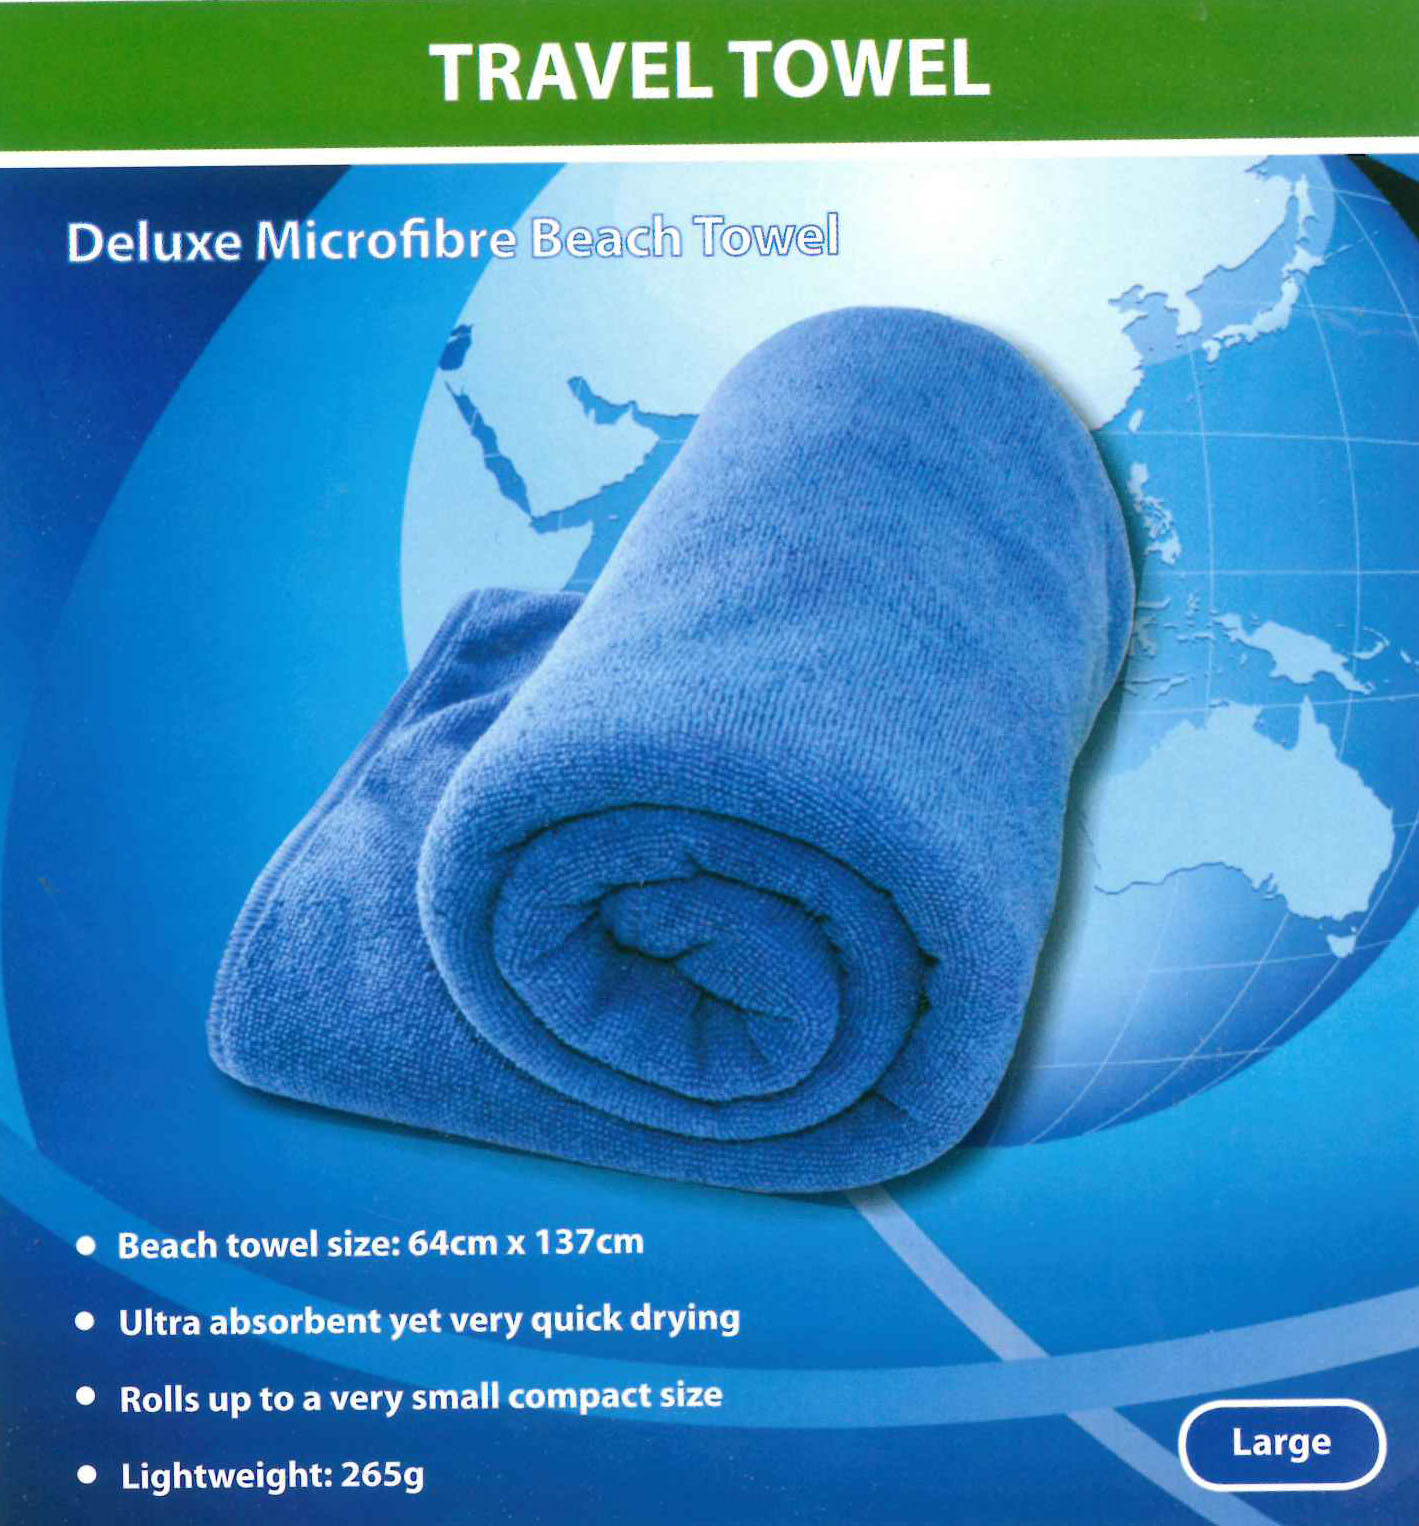 microfibre travel towel sale